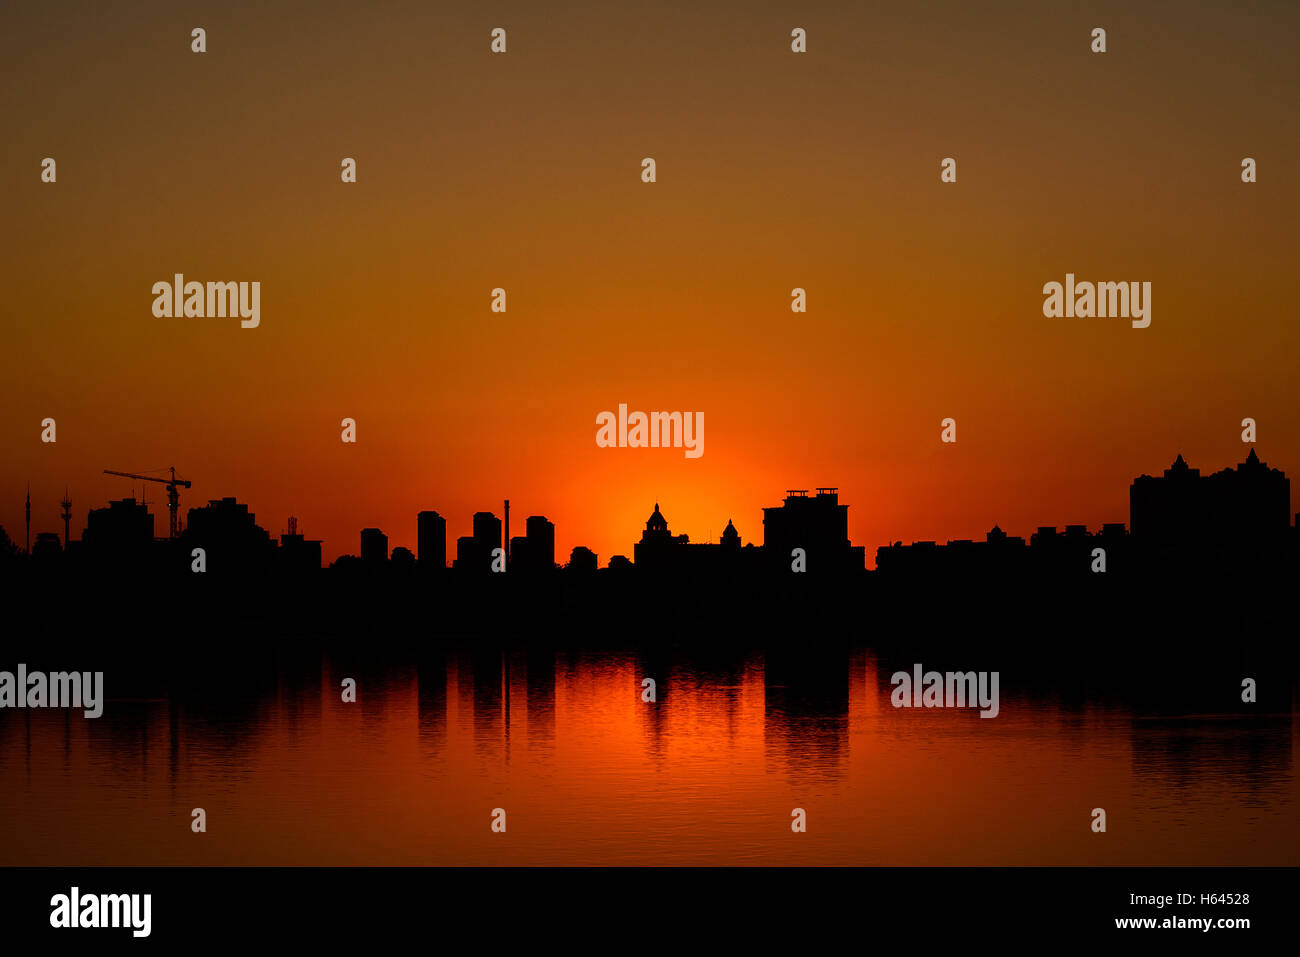 Silhouette von Gebäuden bei Sonnenuntergang in Metro City. Konzept und Idee Bild. Stockfoto